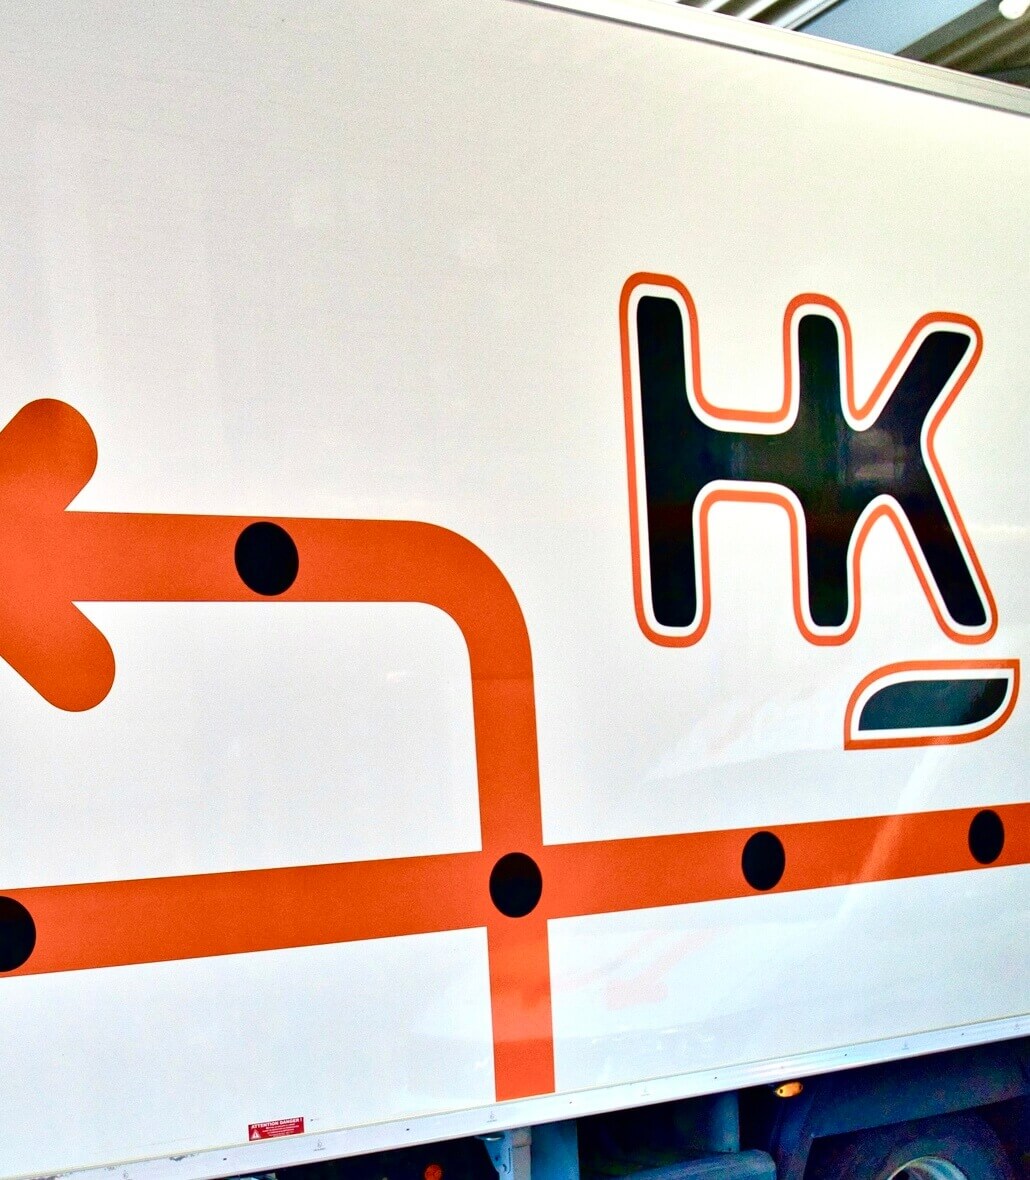 logo hk courses sur camion transporteur